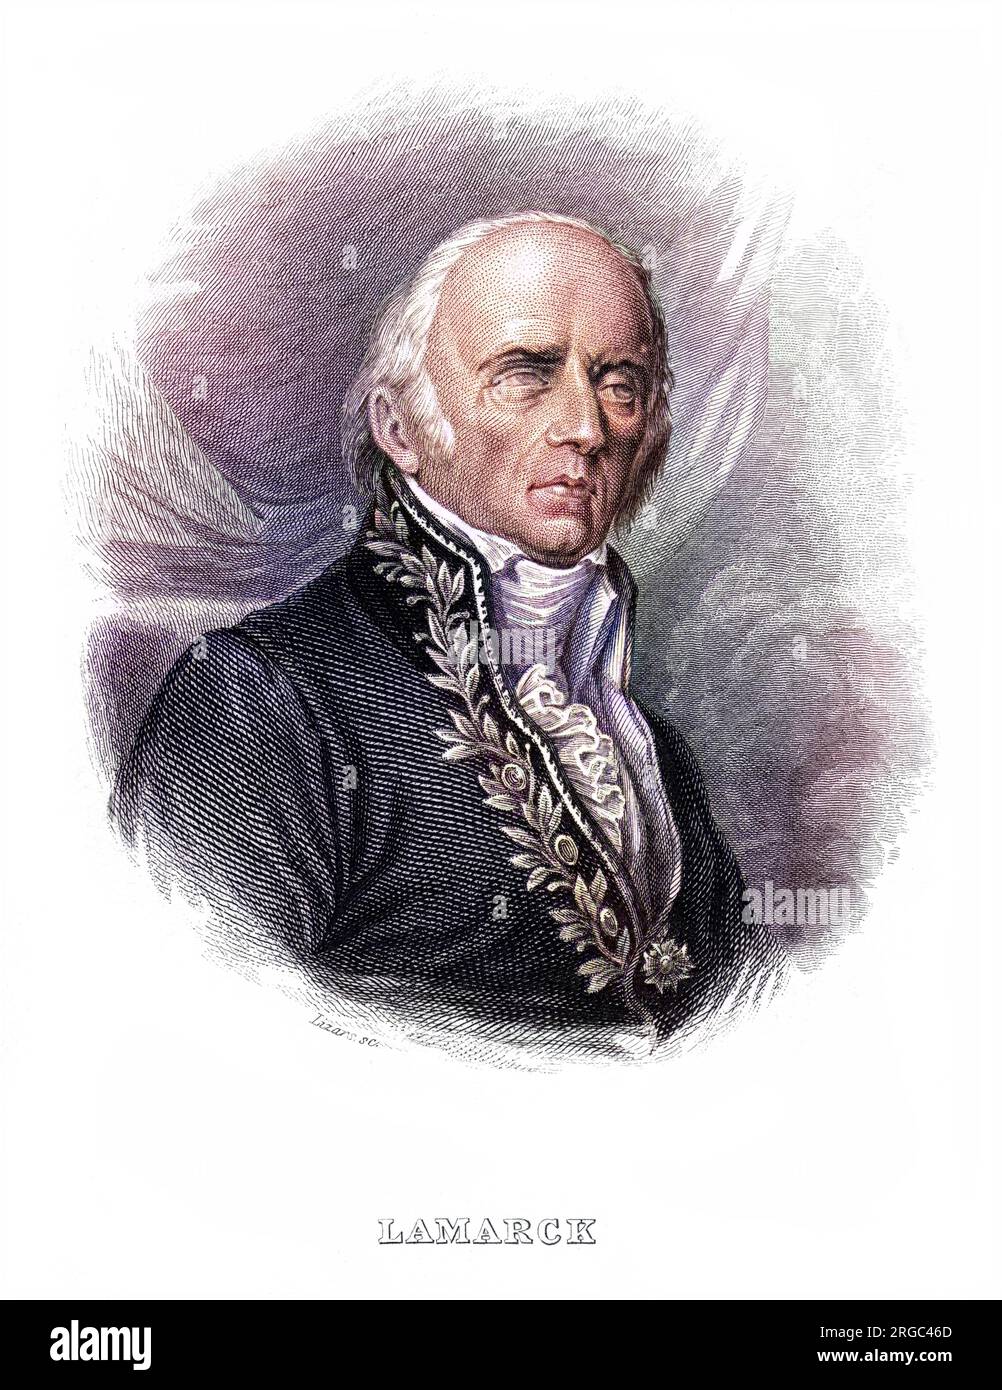 JEAN-BAPTISTE-PIERRE-ANTOINE LAMARCK (1744-1829), französischer Naturforscher, der Darwin in gewisser Hinsicht vorwegnahm, aber die Übertragung erworbener Merkmale akzeptierte. Stockfoto